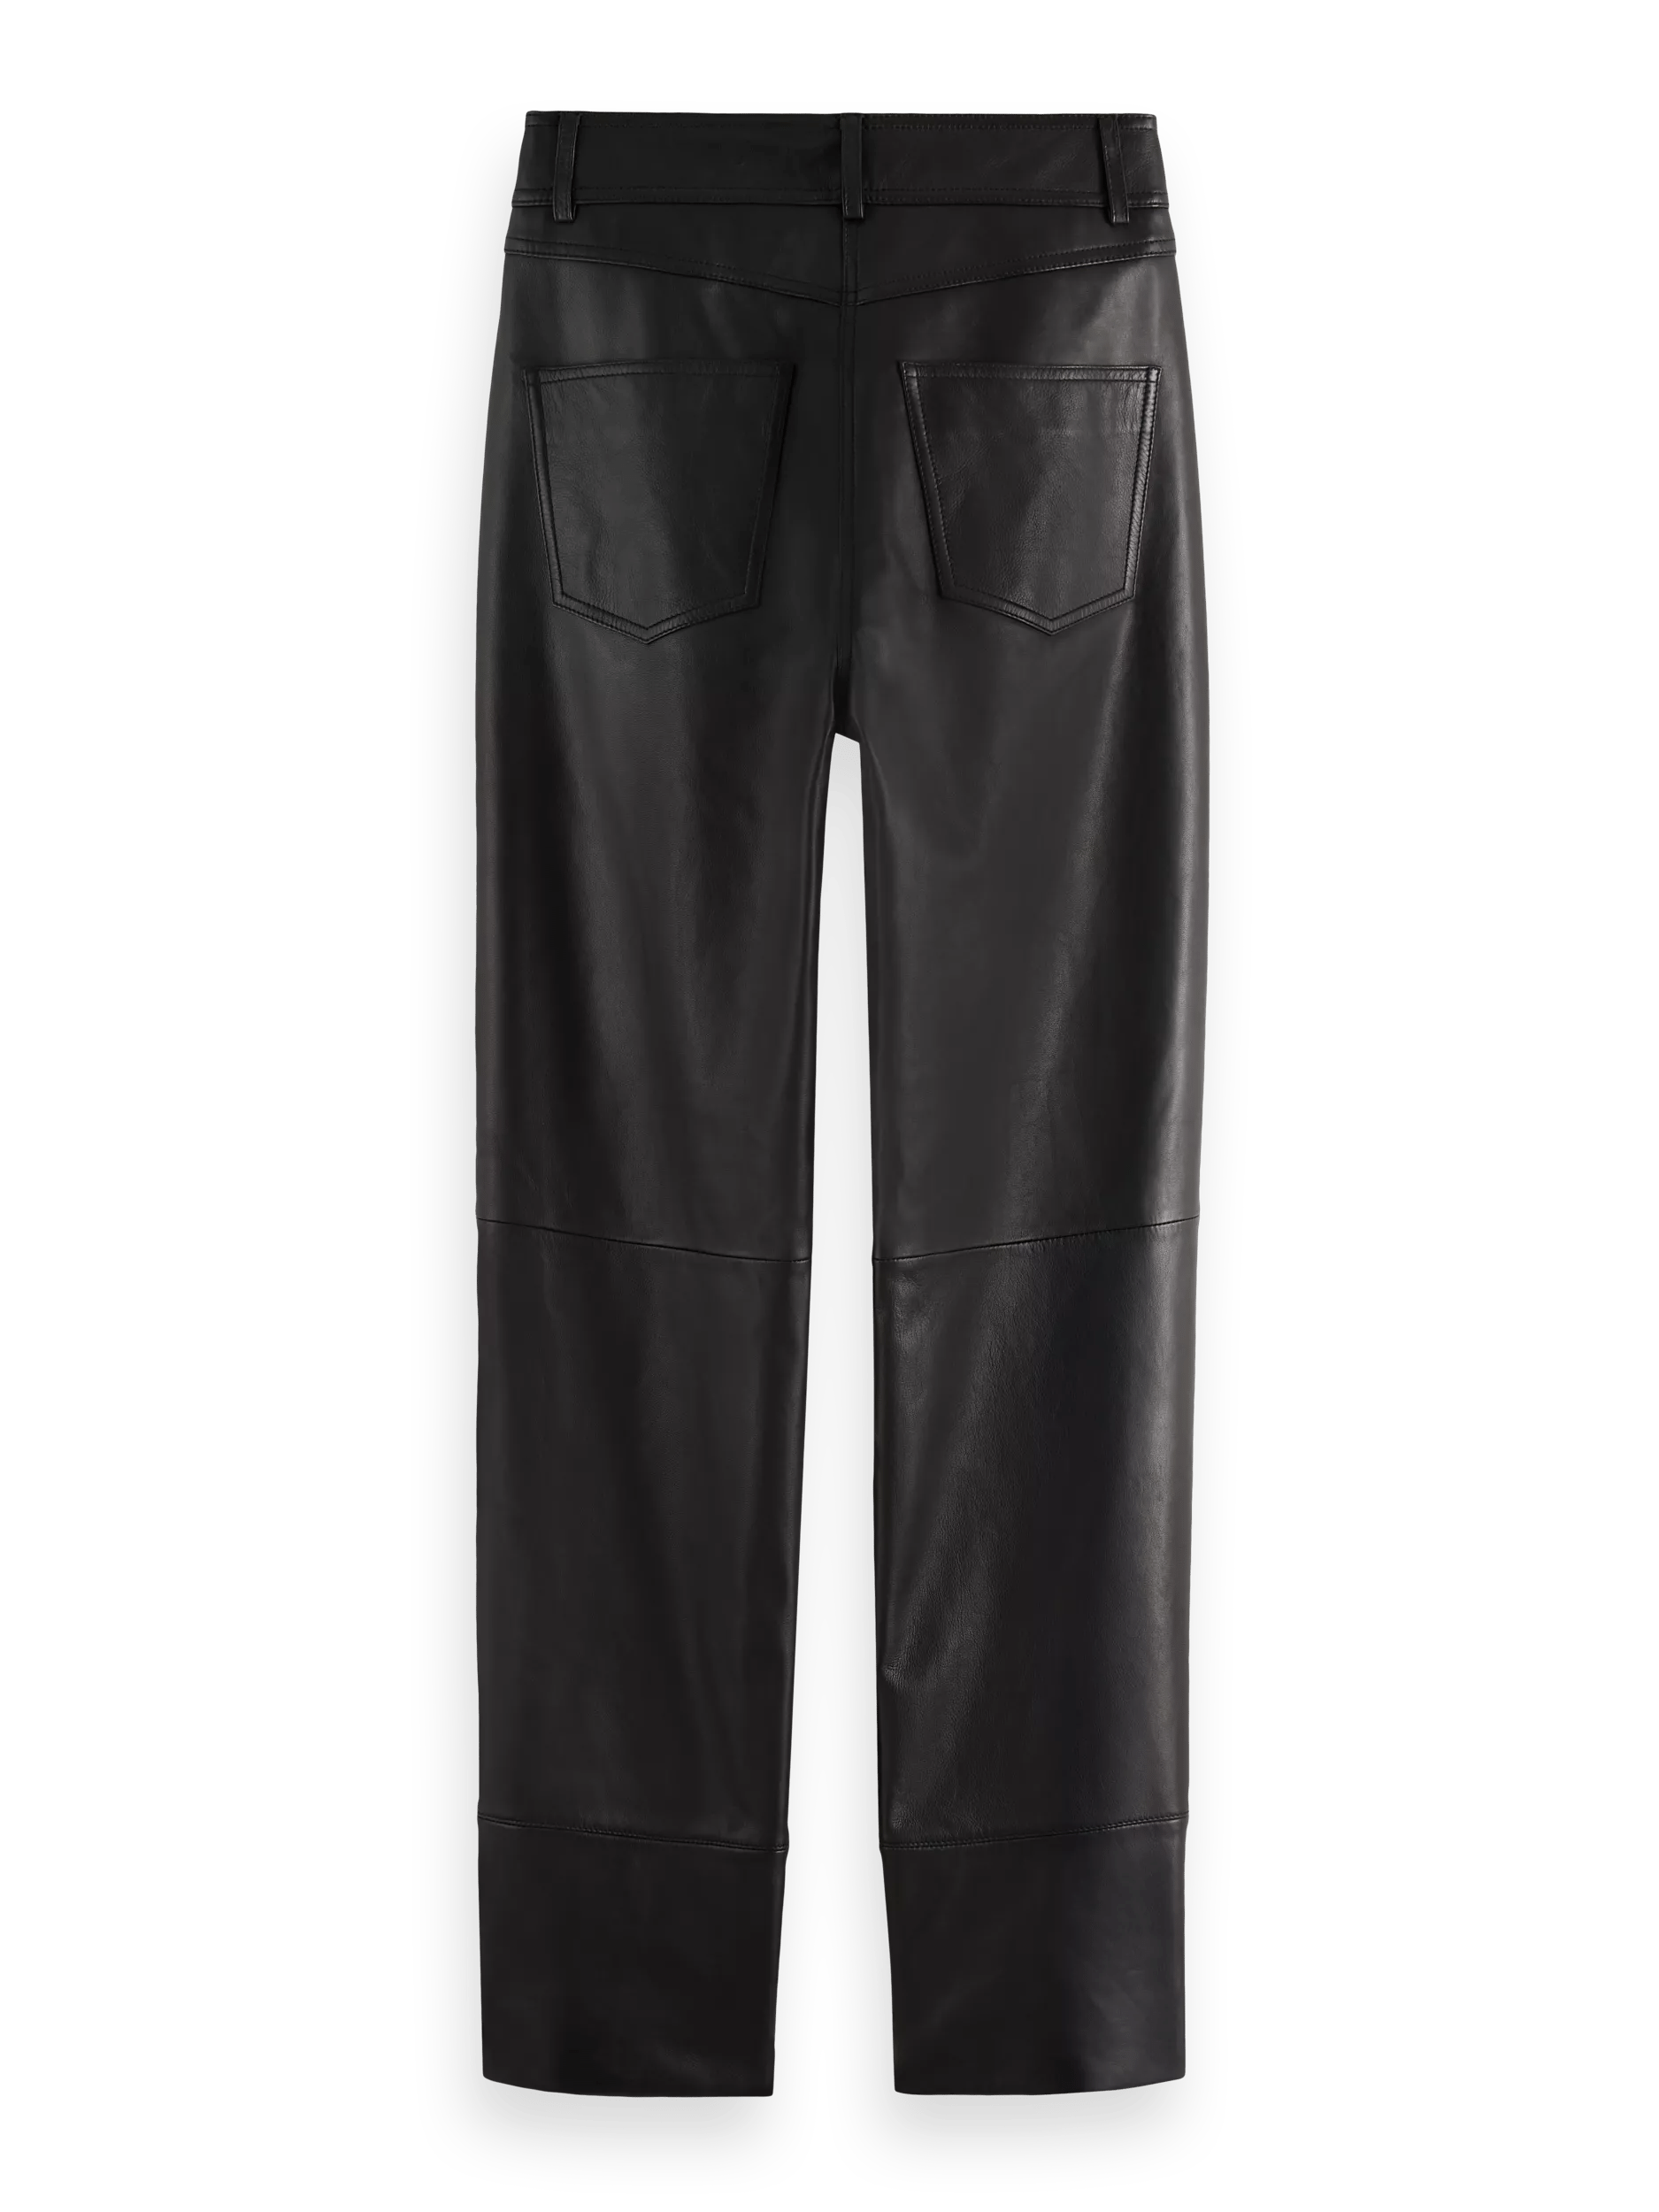 Scotch & Soda Leren broek met rechte pijpen, hoge taille BCK